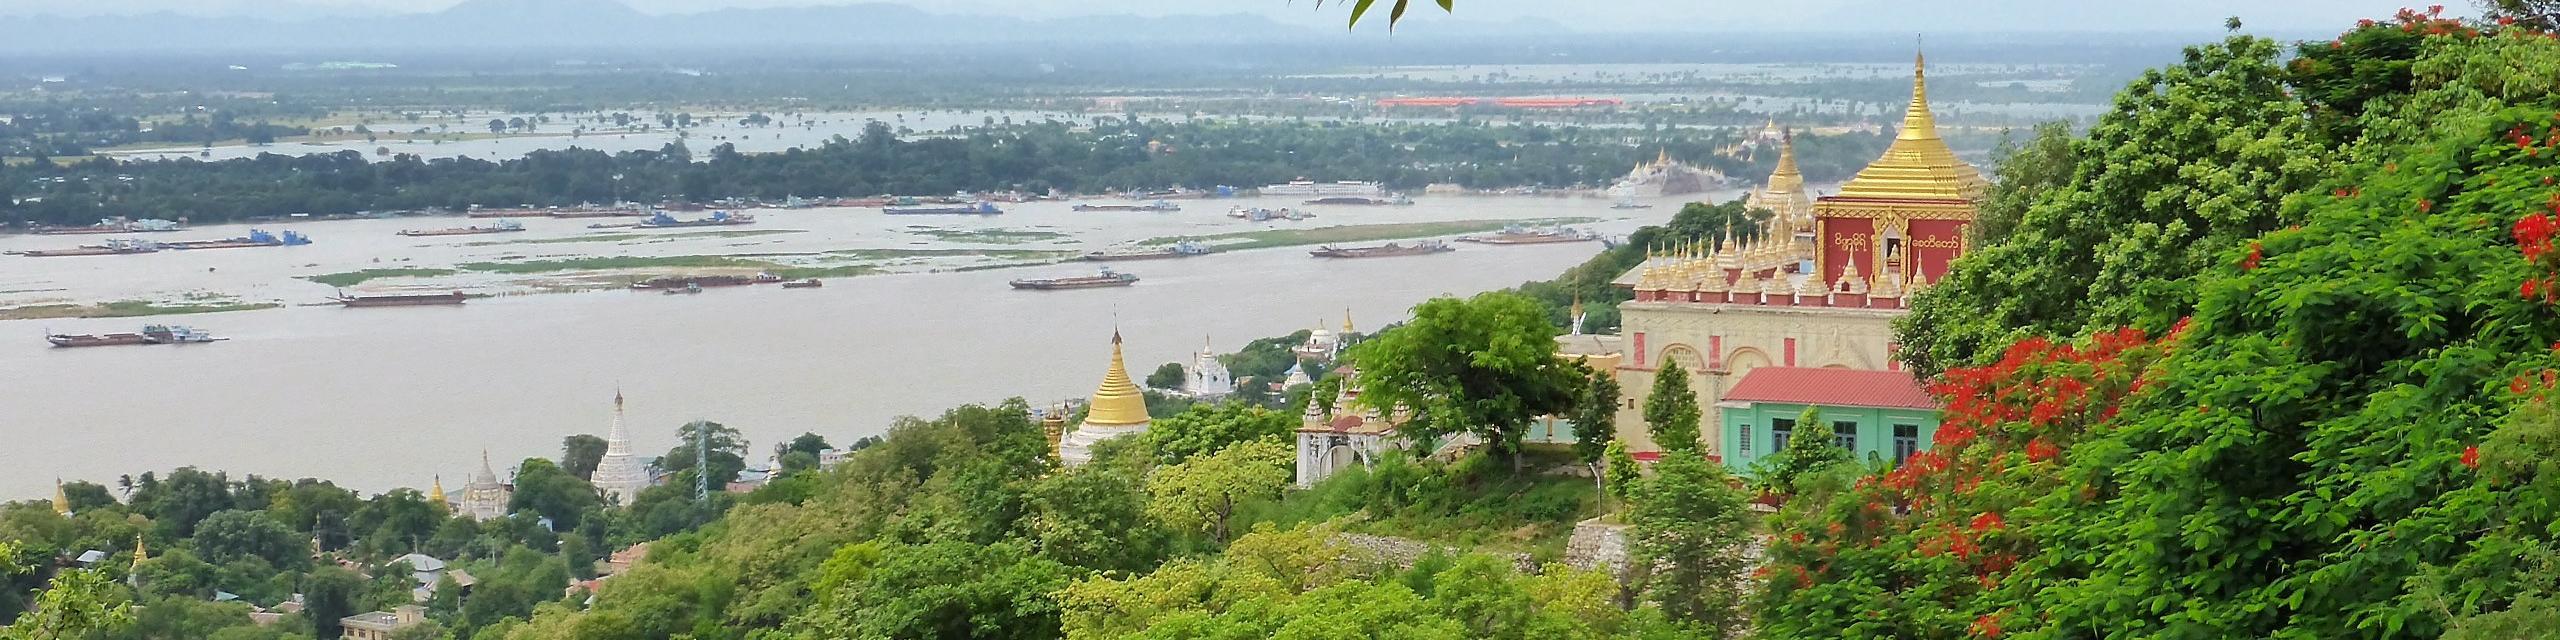 Panorama in Myanmar, grüne Wälder, Tempel mit goldenen Dächern, Fluss im Hintergrund